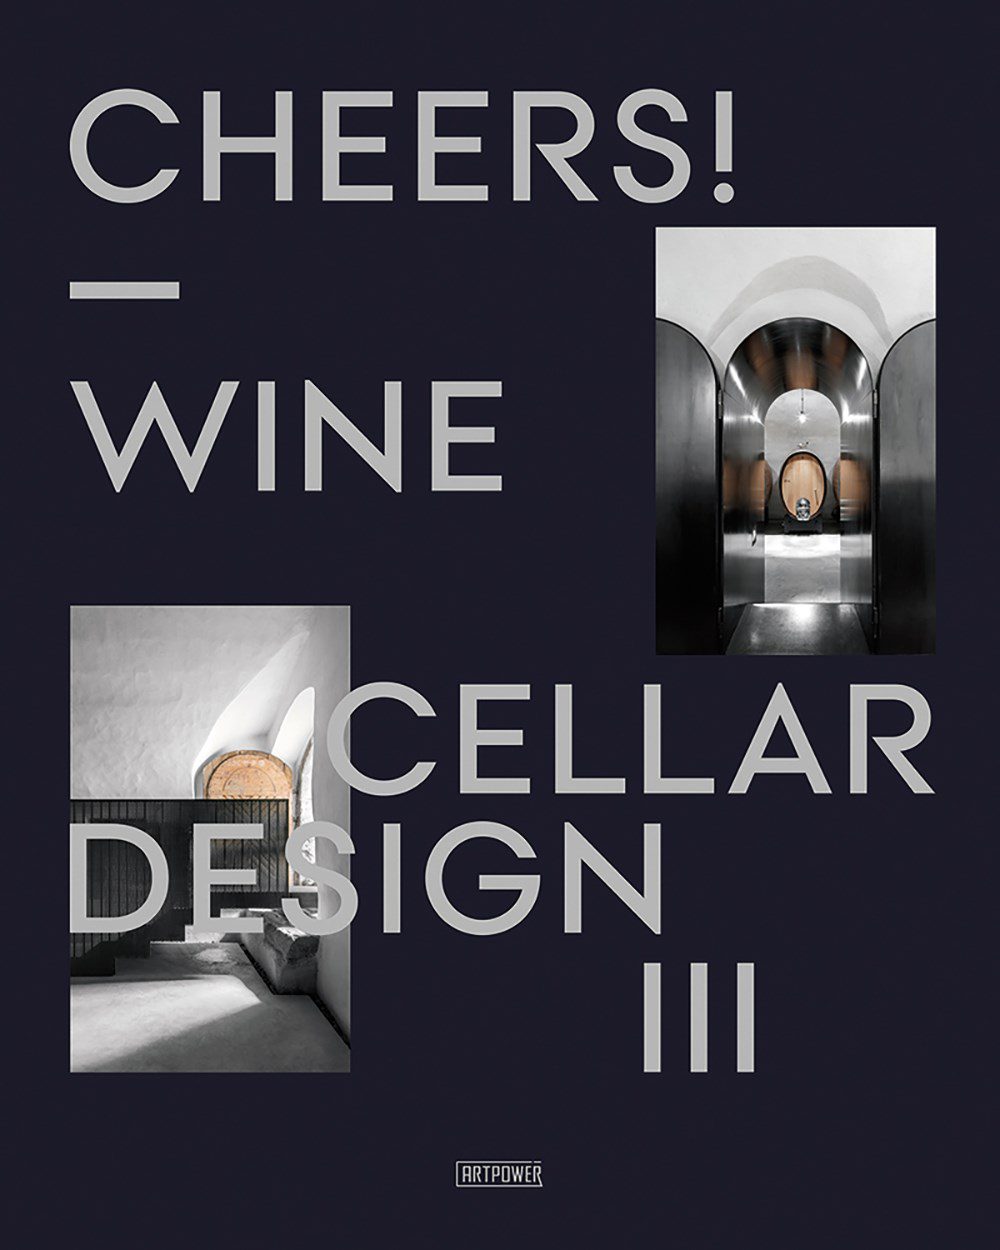 Cheers! Wine Cellar Design III